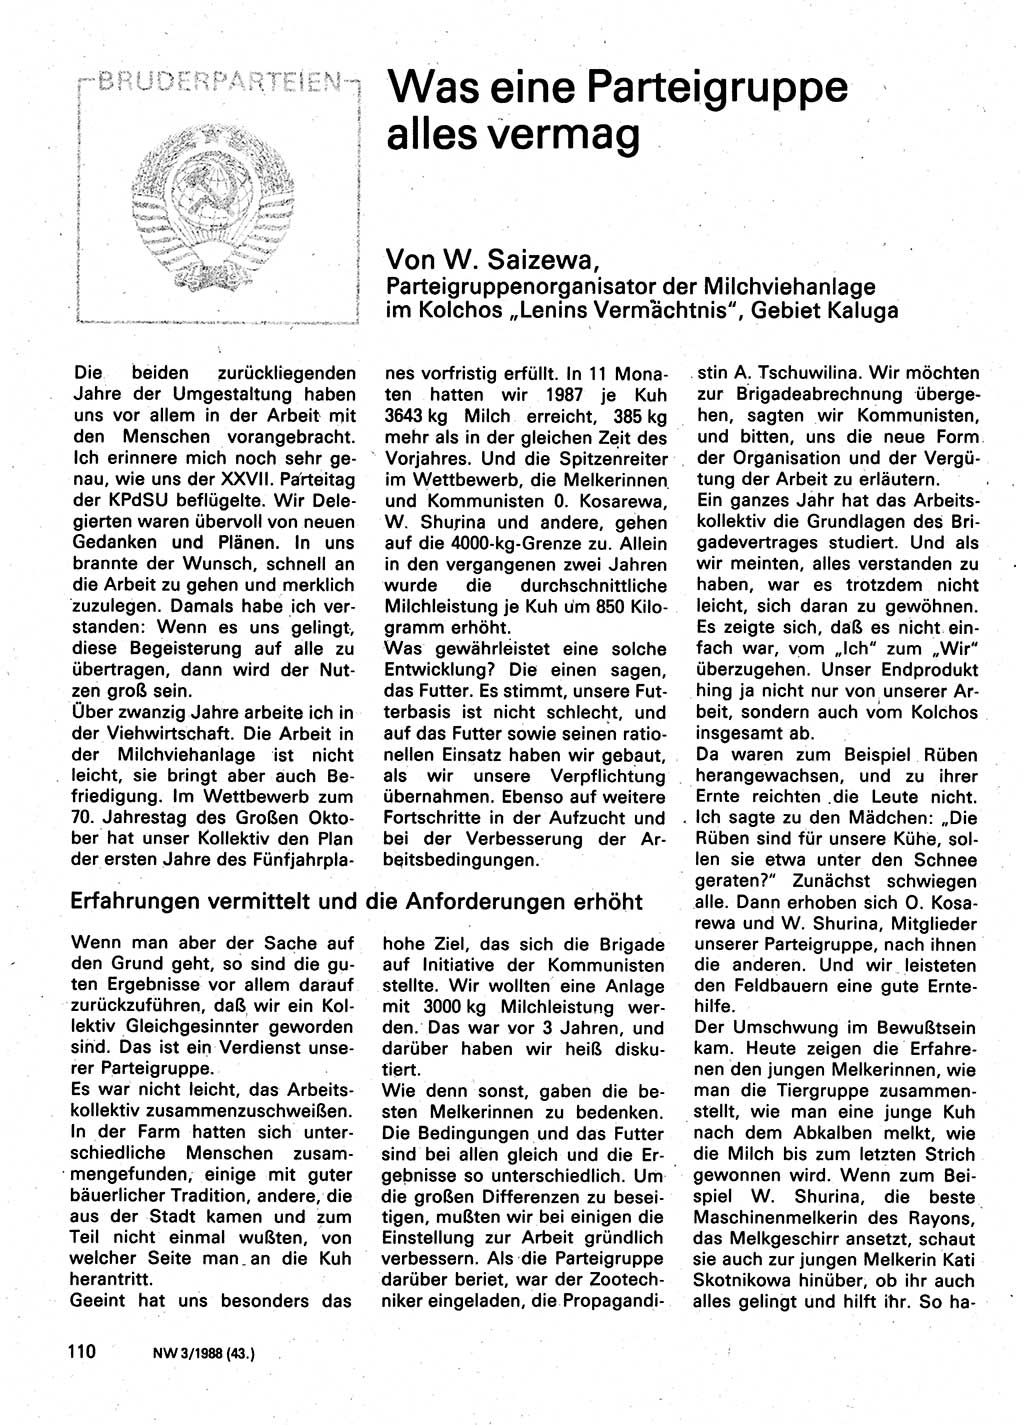 Neuer Weg (NW), Organ des Zentralkomitees (ZK) der SED (Sozialistische Einheitspartei Deutschlands) für Fragen des Parteilebens, 43. Jahrgang [Deutsche Demokratische Republik (DDR)] 1988, Seite 110 (NW ZK SED DDR 1988, S. 110)